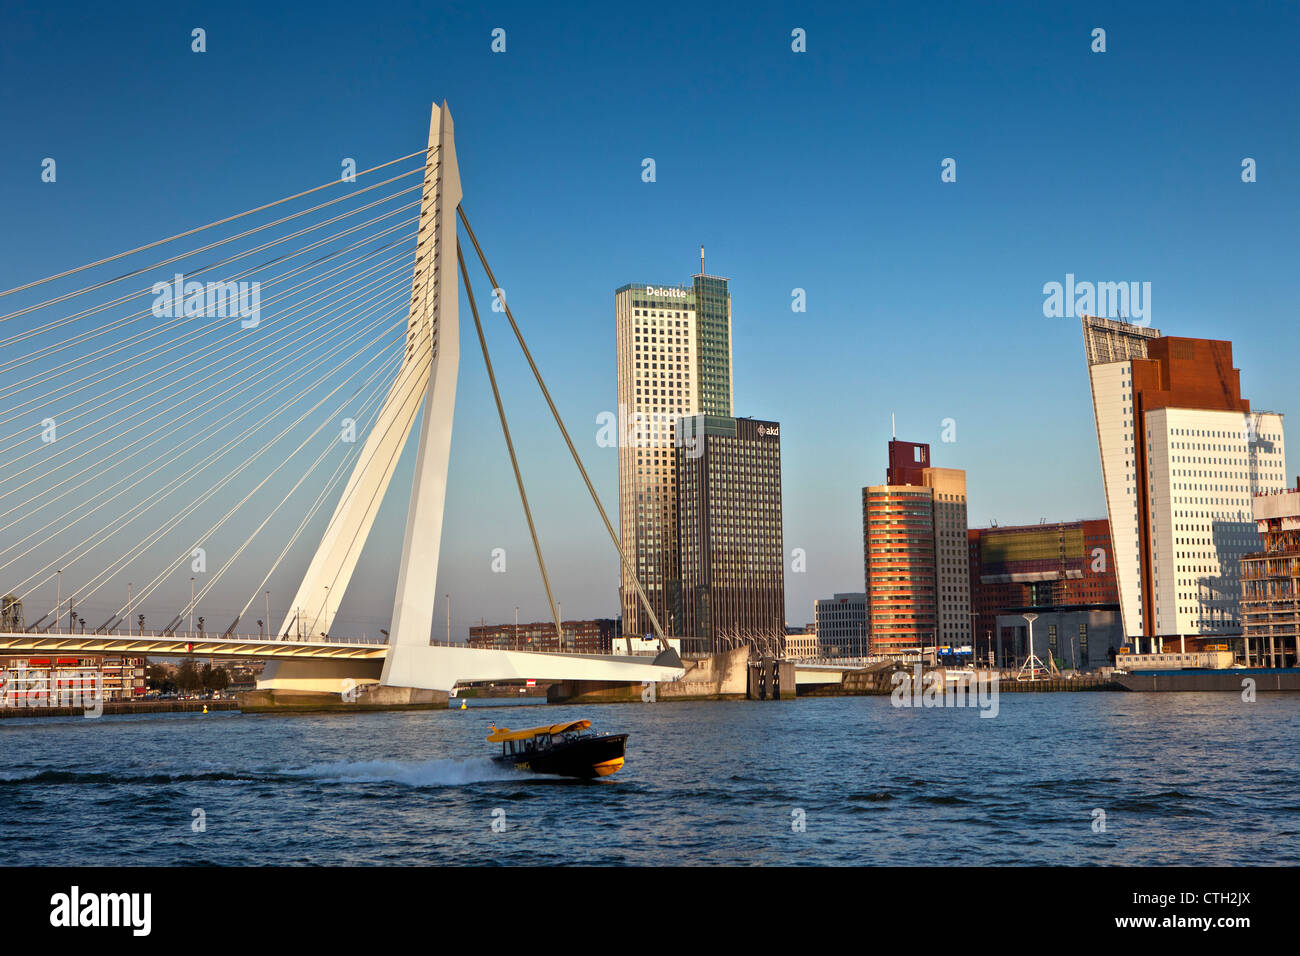 Wohn- und Geschäftsviertel genannt Kop van Zuid. Brücke genannt Erasmusbrücke, Architekten Ben van Berkel. Stockfoto